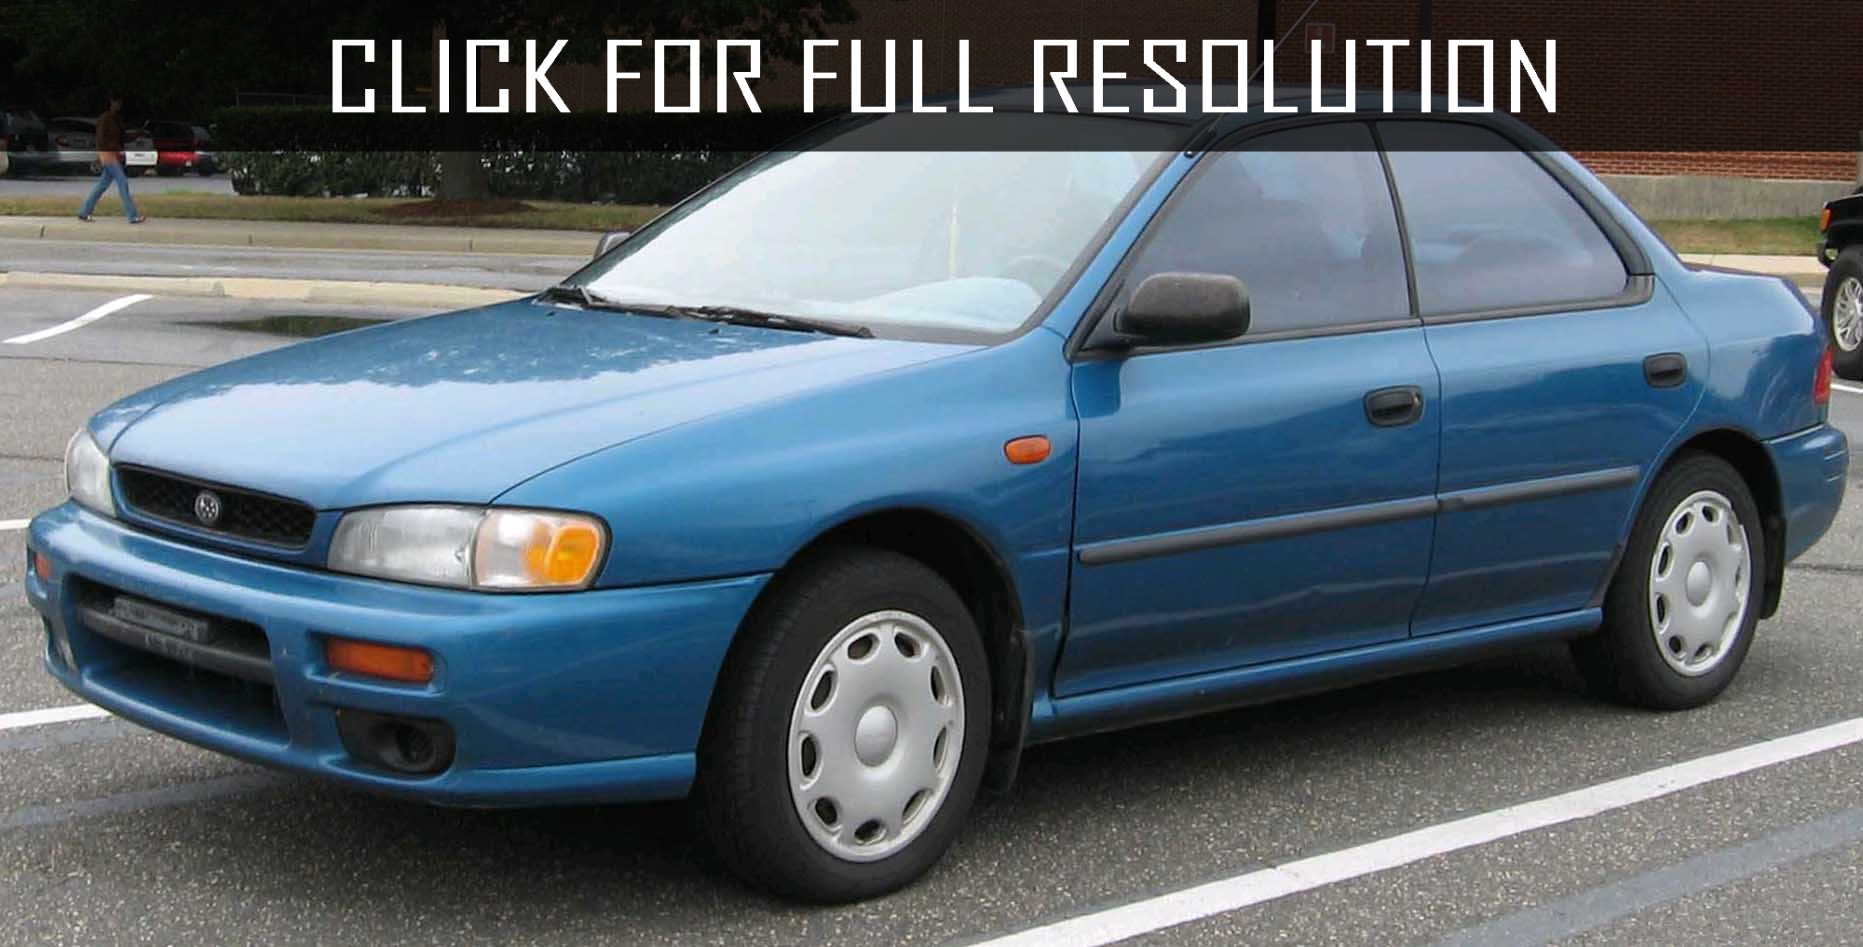 1997 Subaru Impreza Sedan